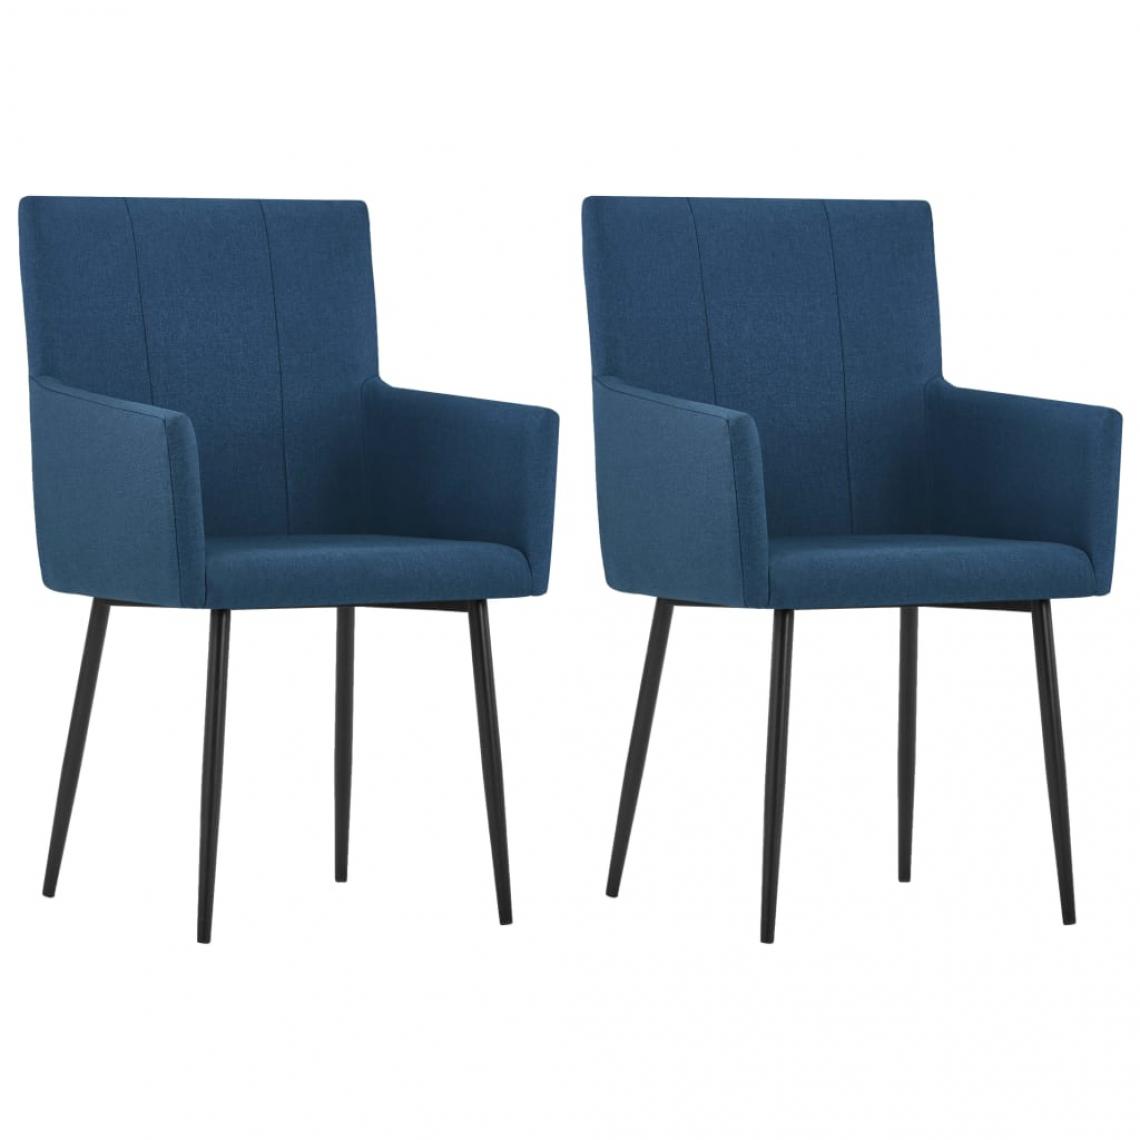 Decoshop26 - Lot de 2 chaises de salle à manger cuisine avec accoudoirs design moderne tissu bleu CDS020133 - Chaises